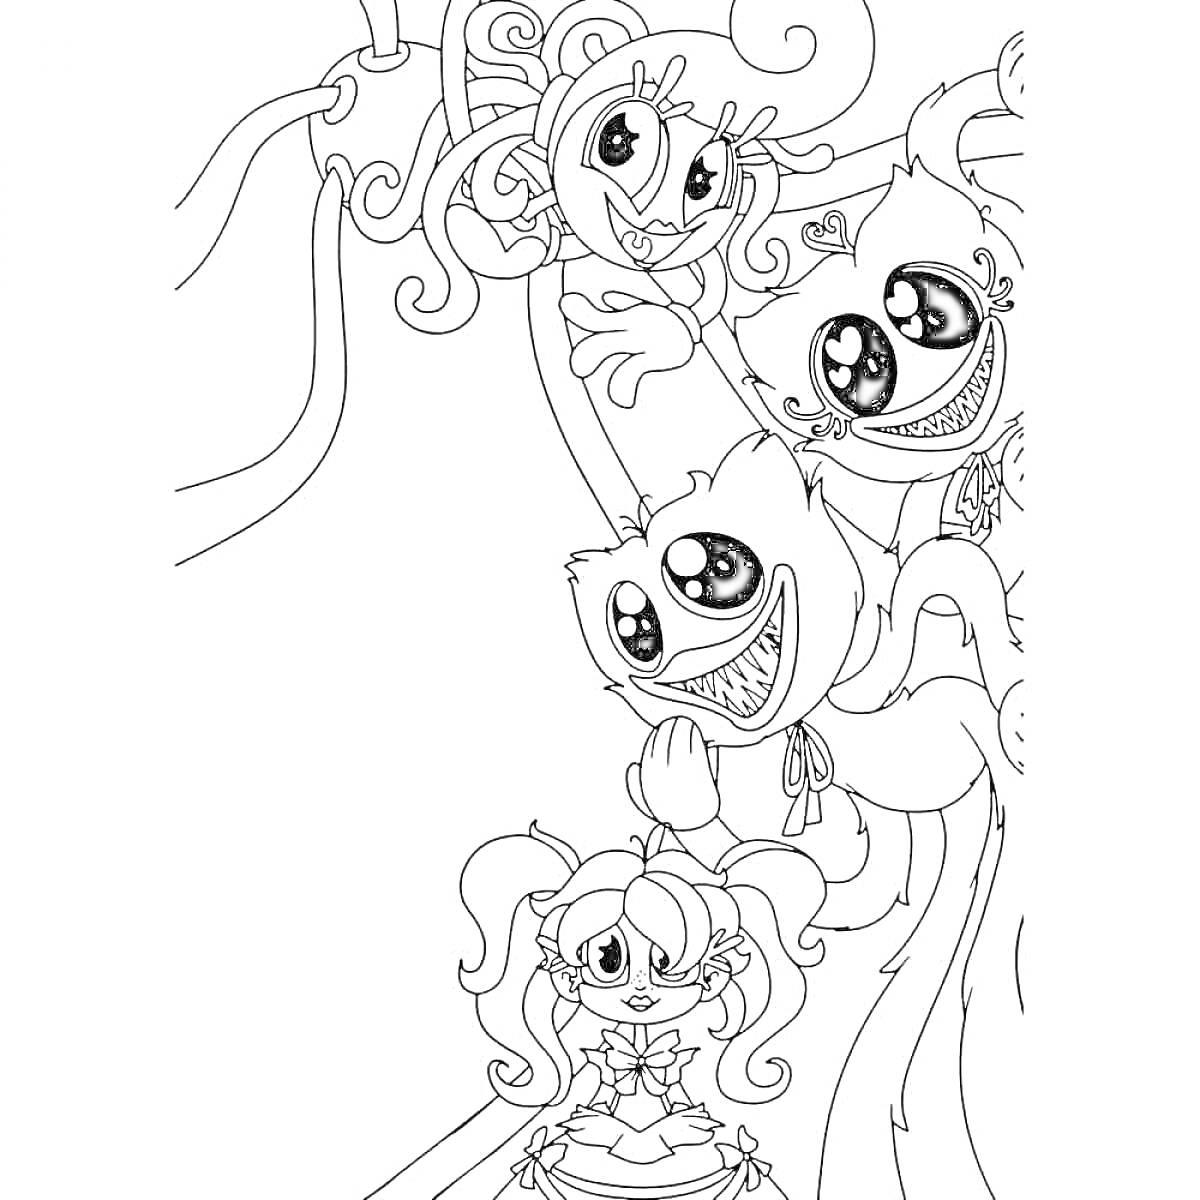 Раскраска Три существа с большими глазами и улыбками, девушка с двумя хвостиками и большим бантом, многочисленные чернильные щупальца